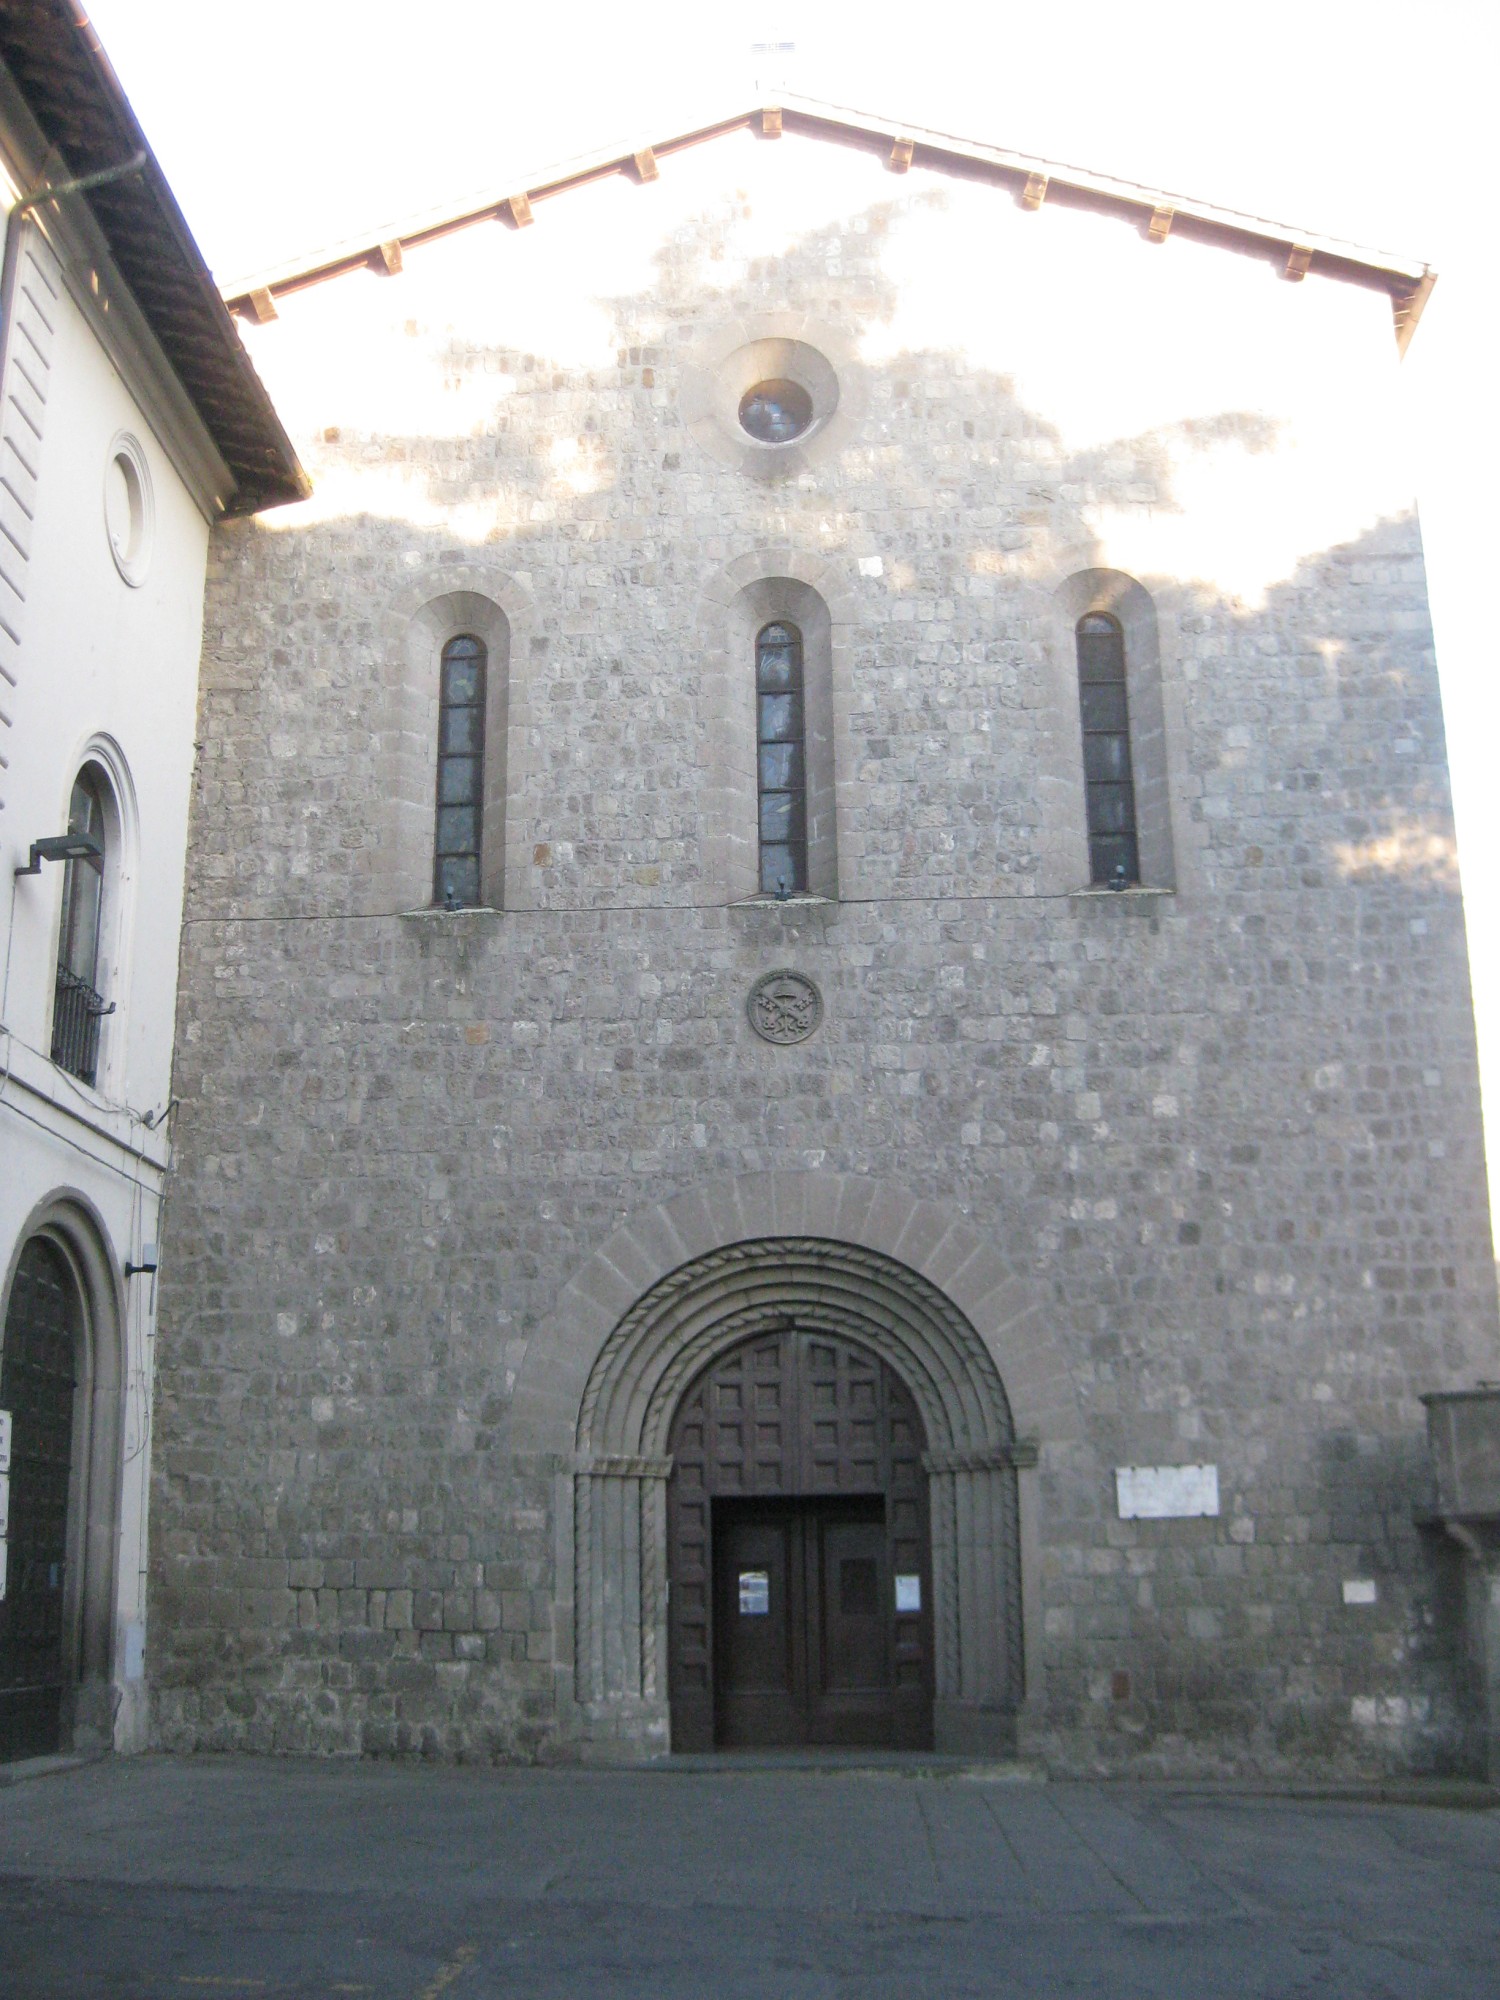 Viterbo - Basilika San Francesco alla Rocca (2) | Latium | Pictures ...